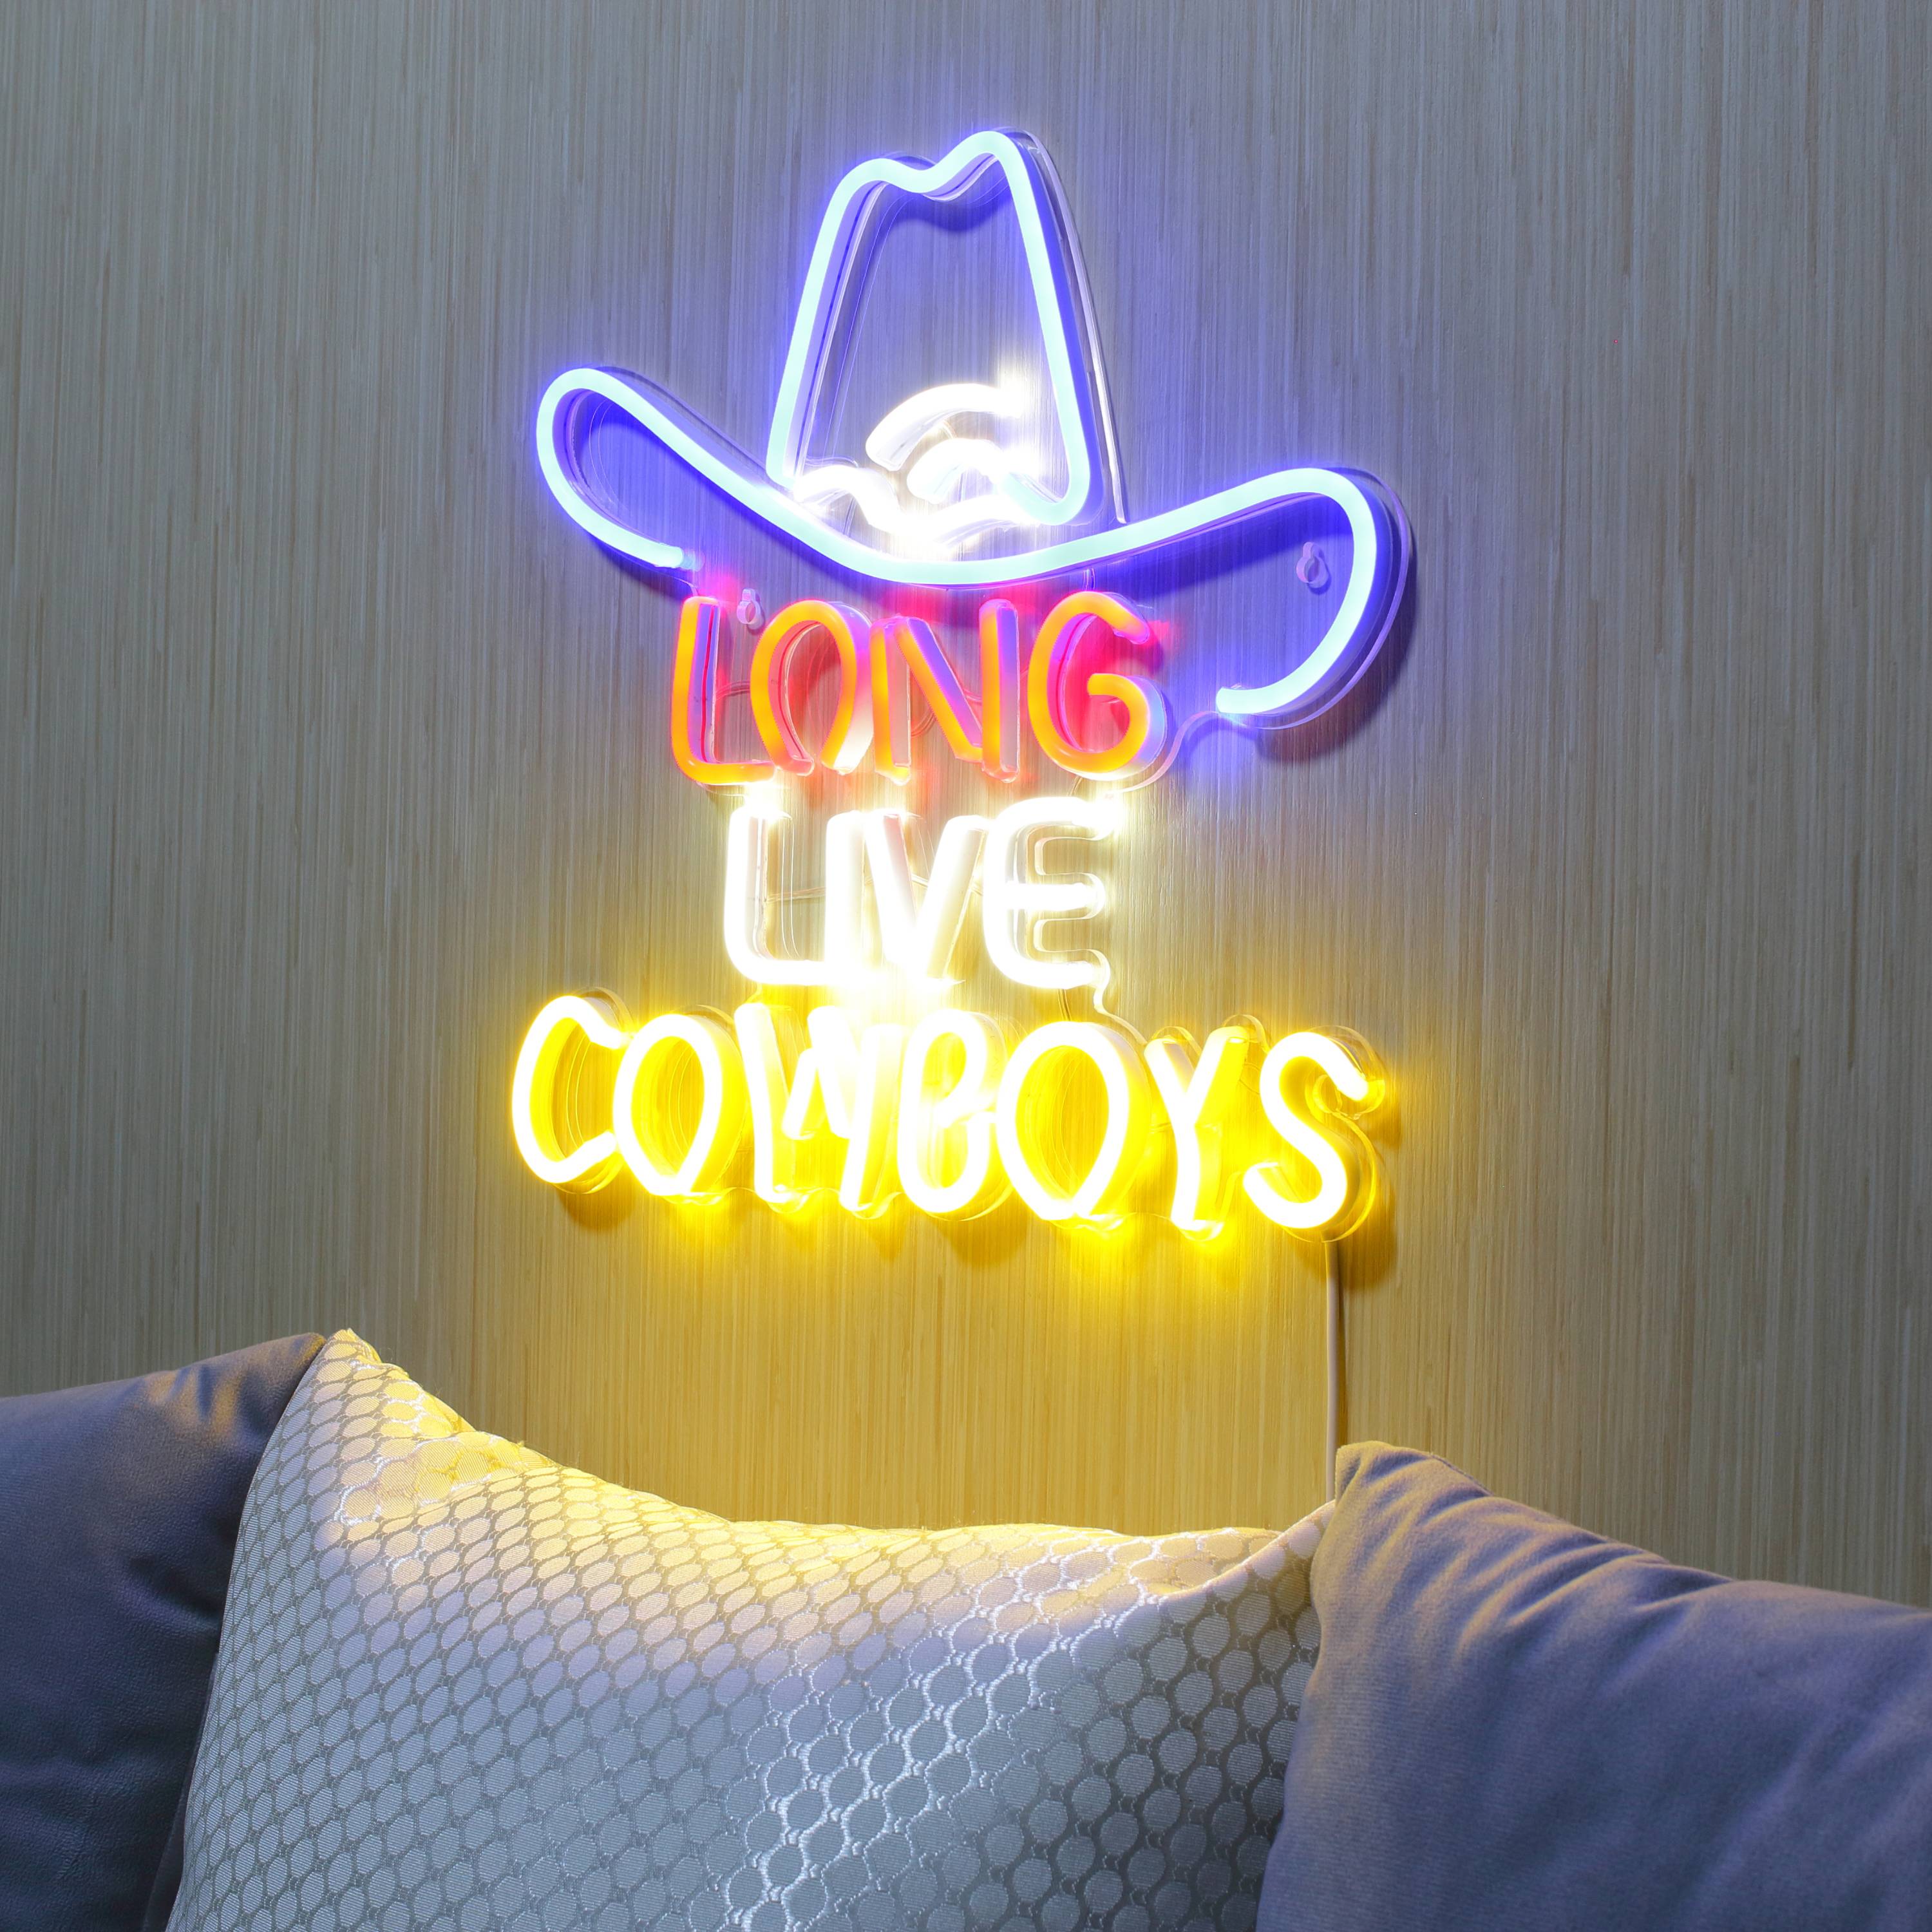 Long Live Cowboys Large Flex Neon LED Sign